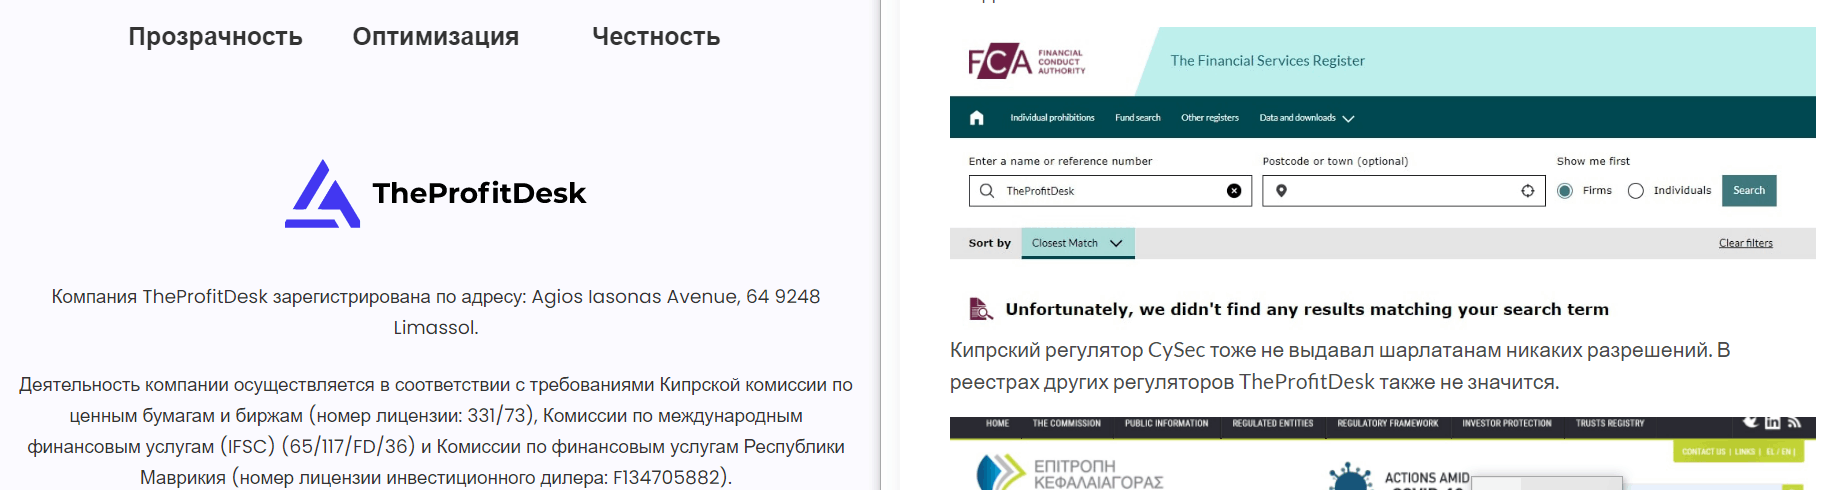 TheProfitDesk лицензии